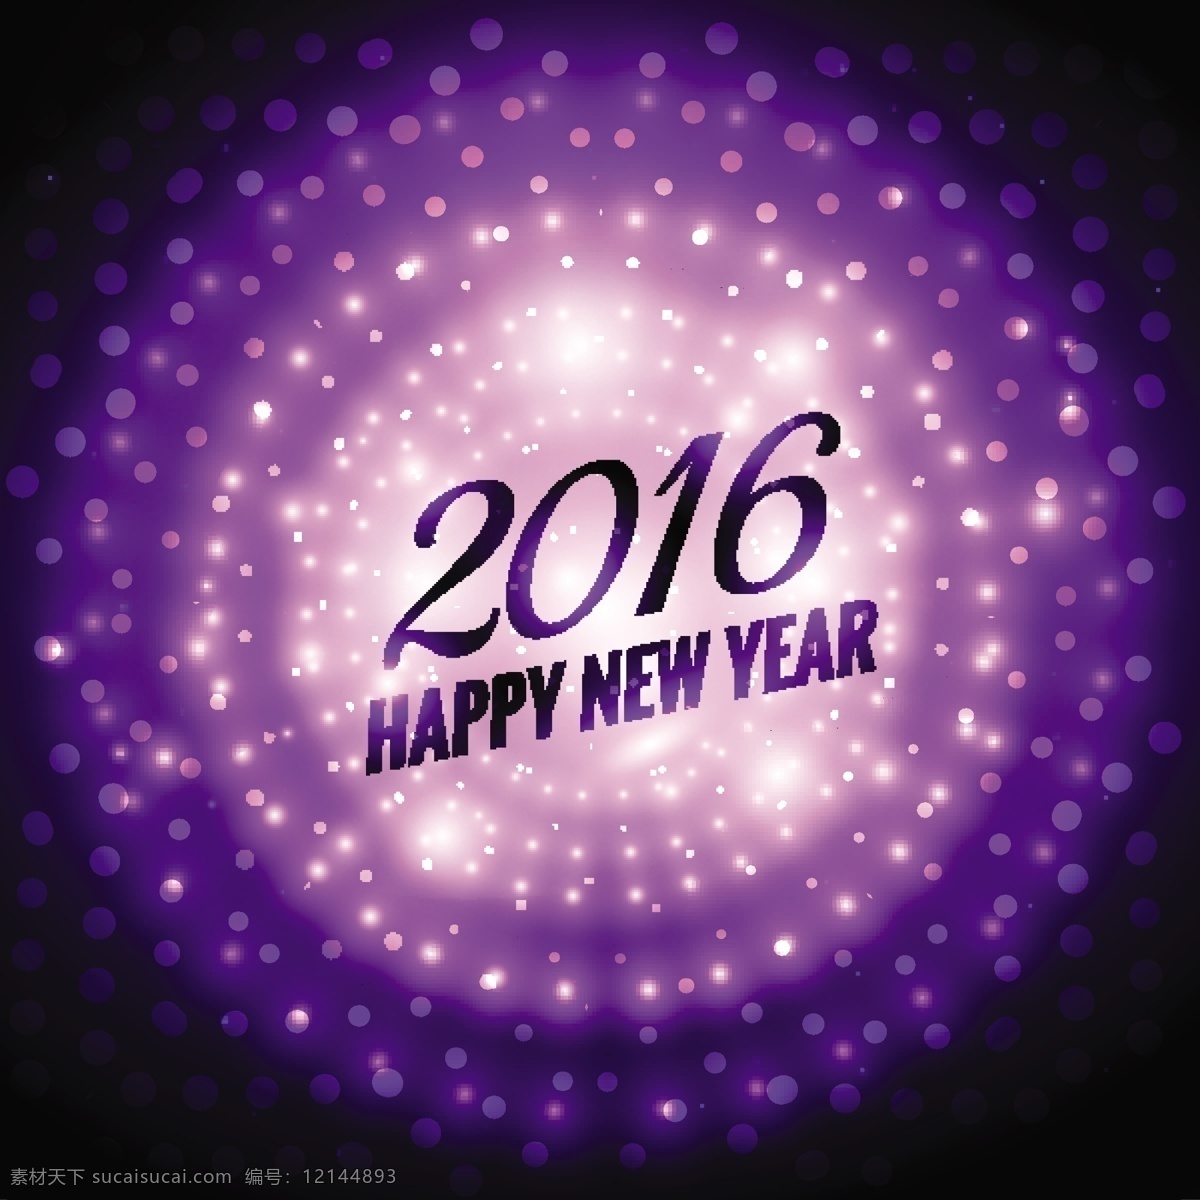 闪亮 新 年 2016 紫色 背景 色 聚会 新的一年 新年快乐 冬天快乐 庆祝 活动 节日 背景虚化 节日快乐 紫色的背景 冬天 明亮 党背景 季节 黑色